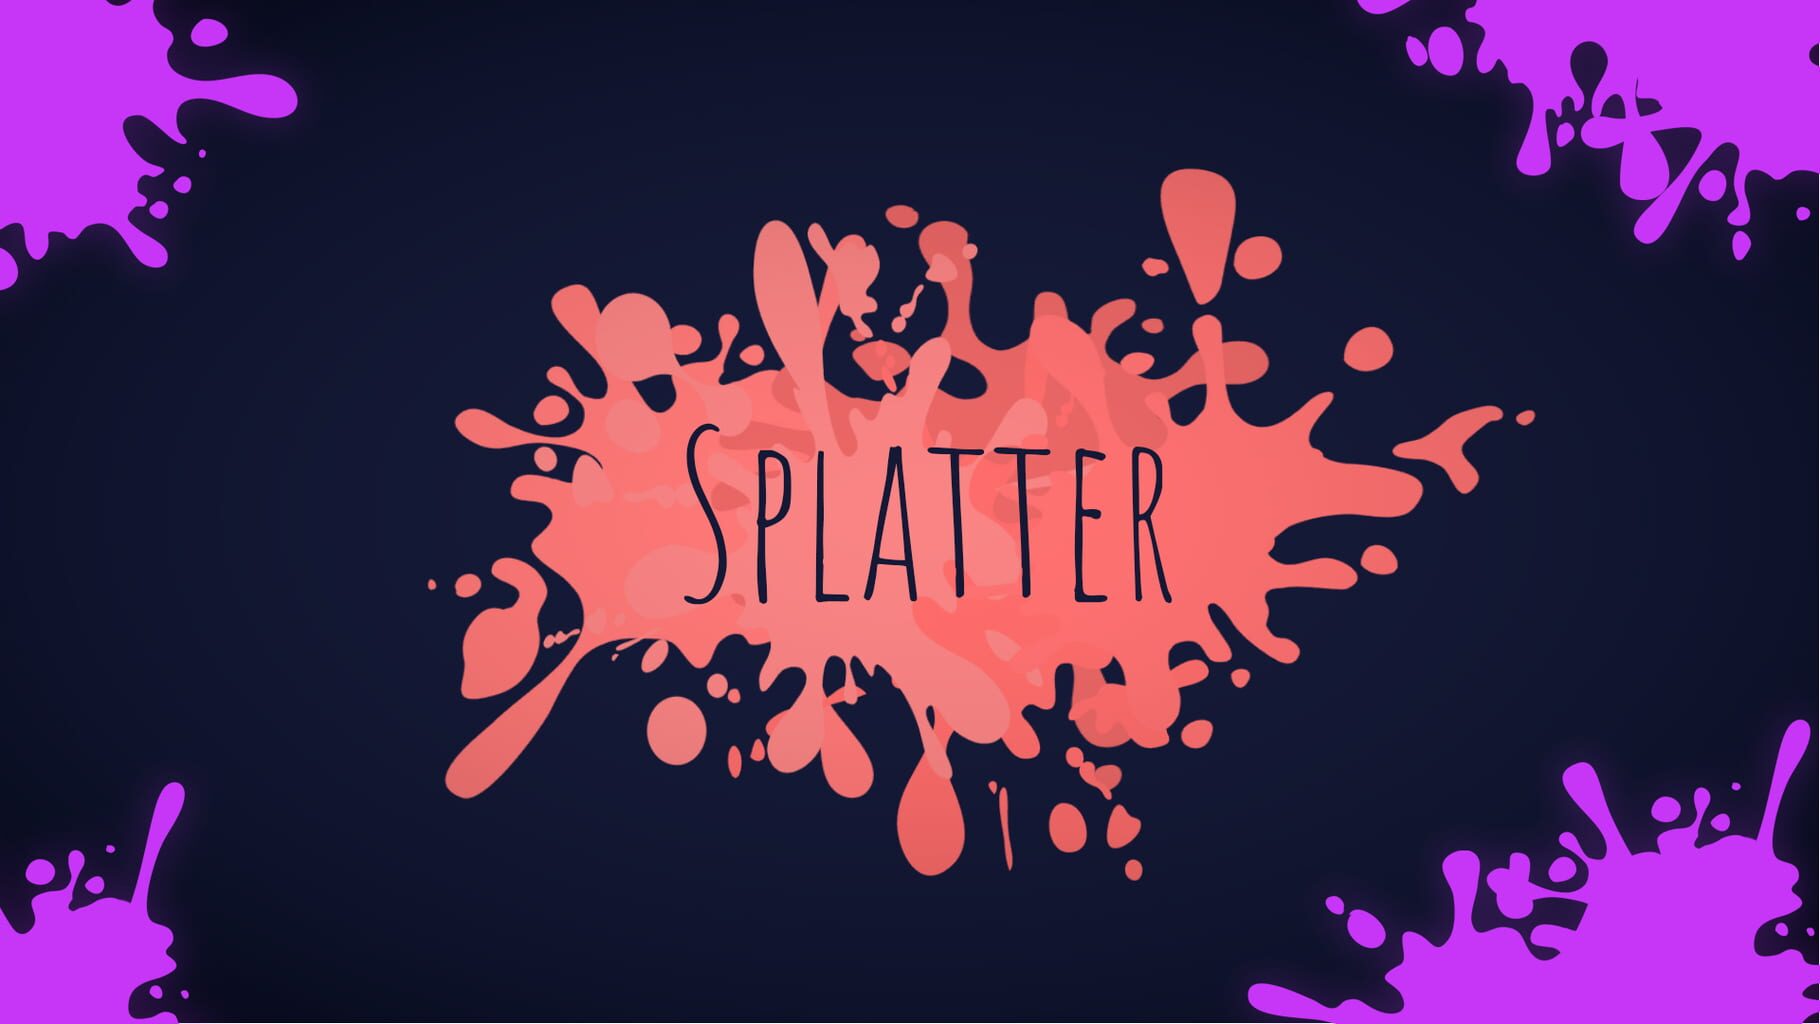 Splatter artwork